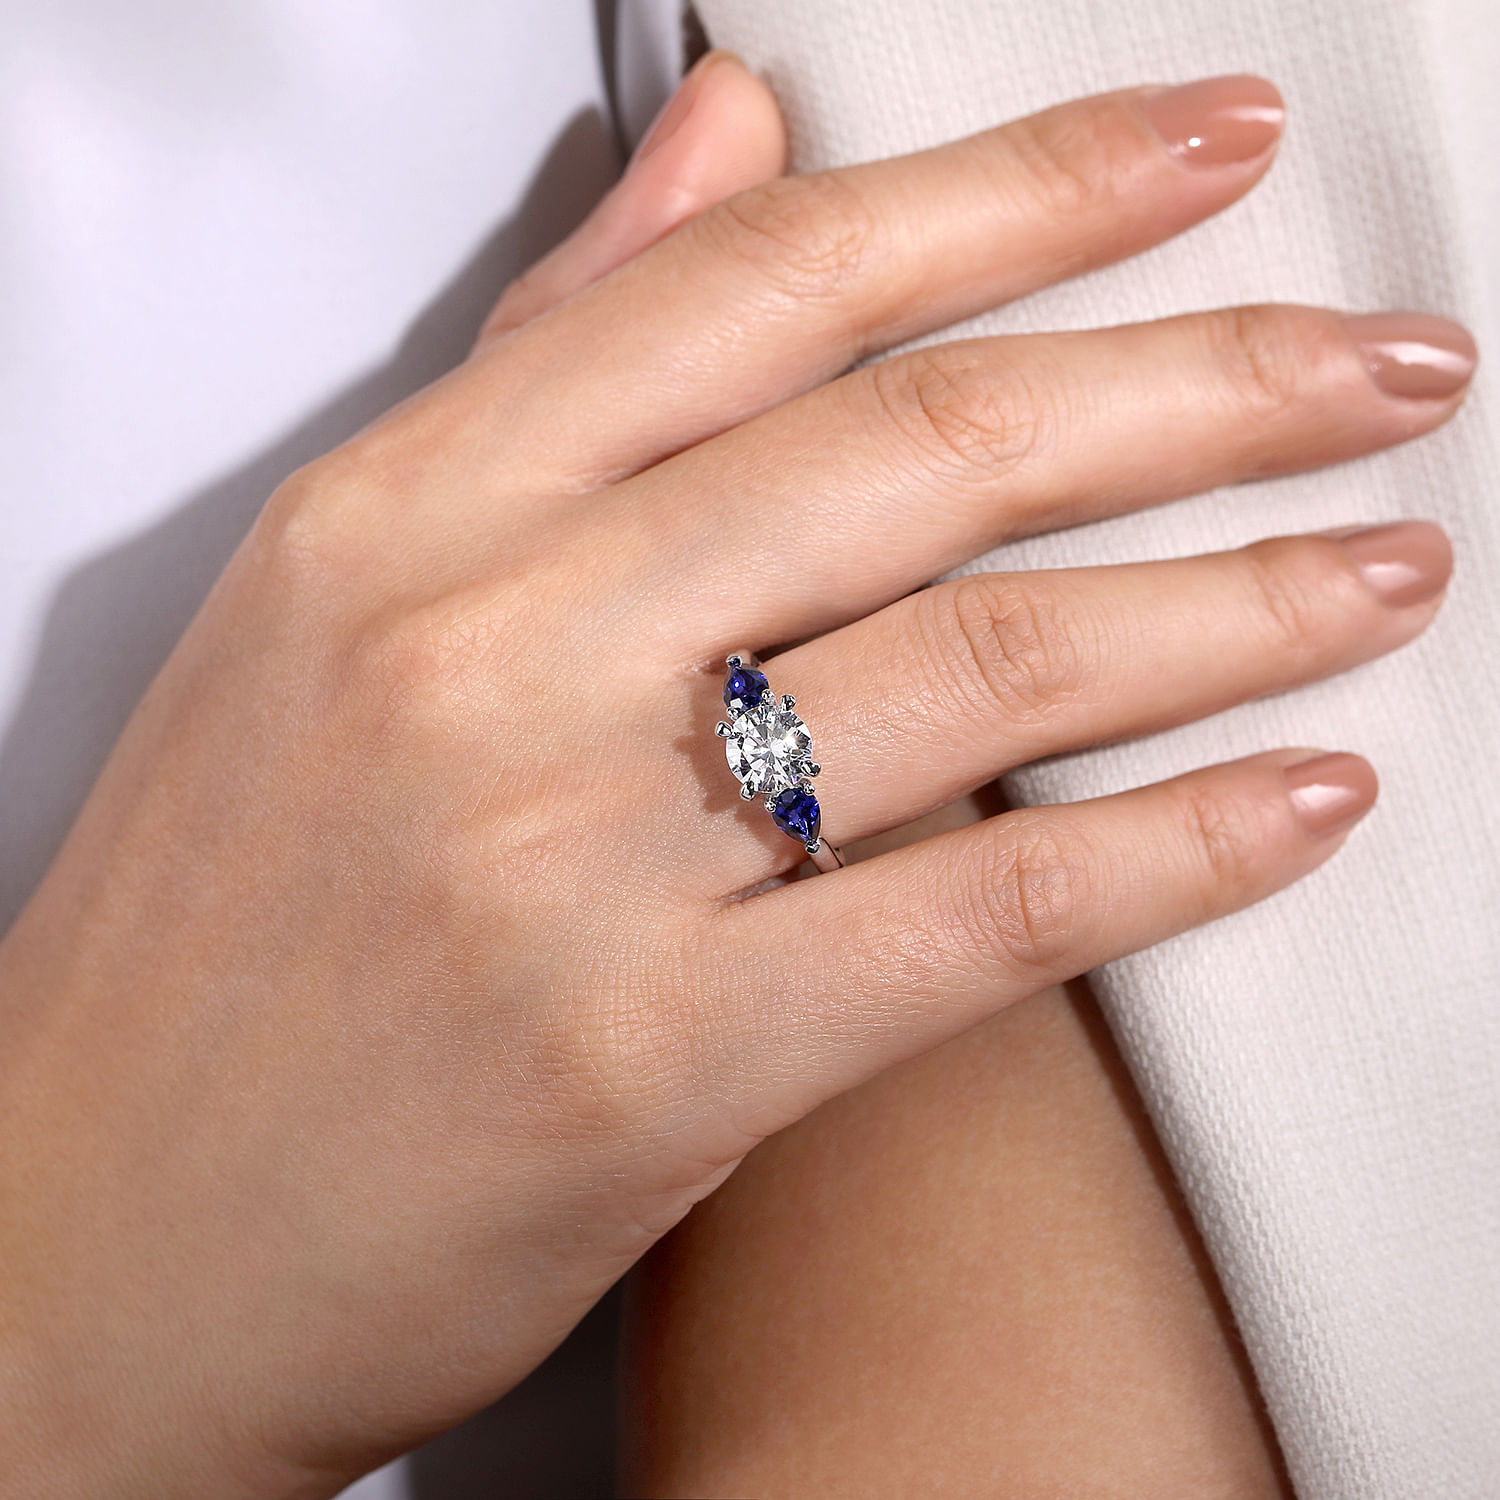 14K White Gold Round Three Stone Sapphire and Diamond Engagement Ring